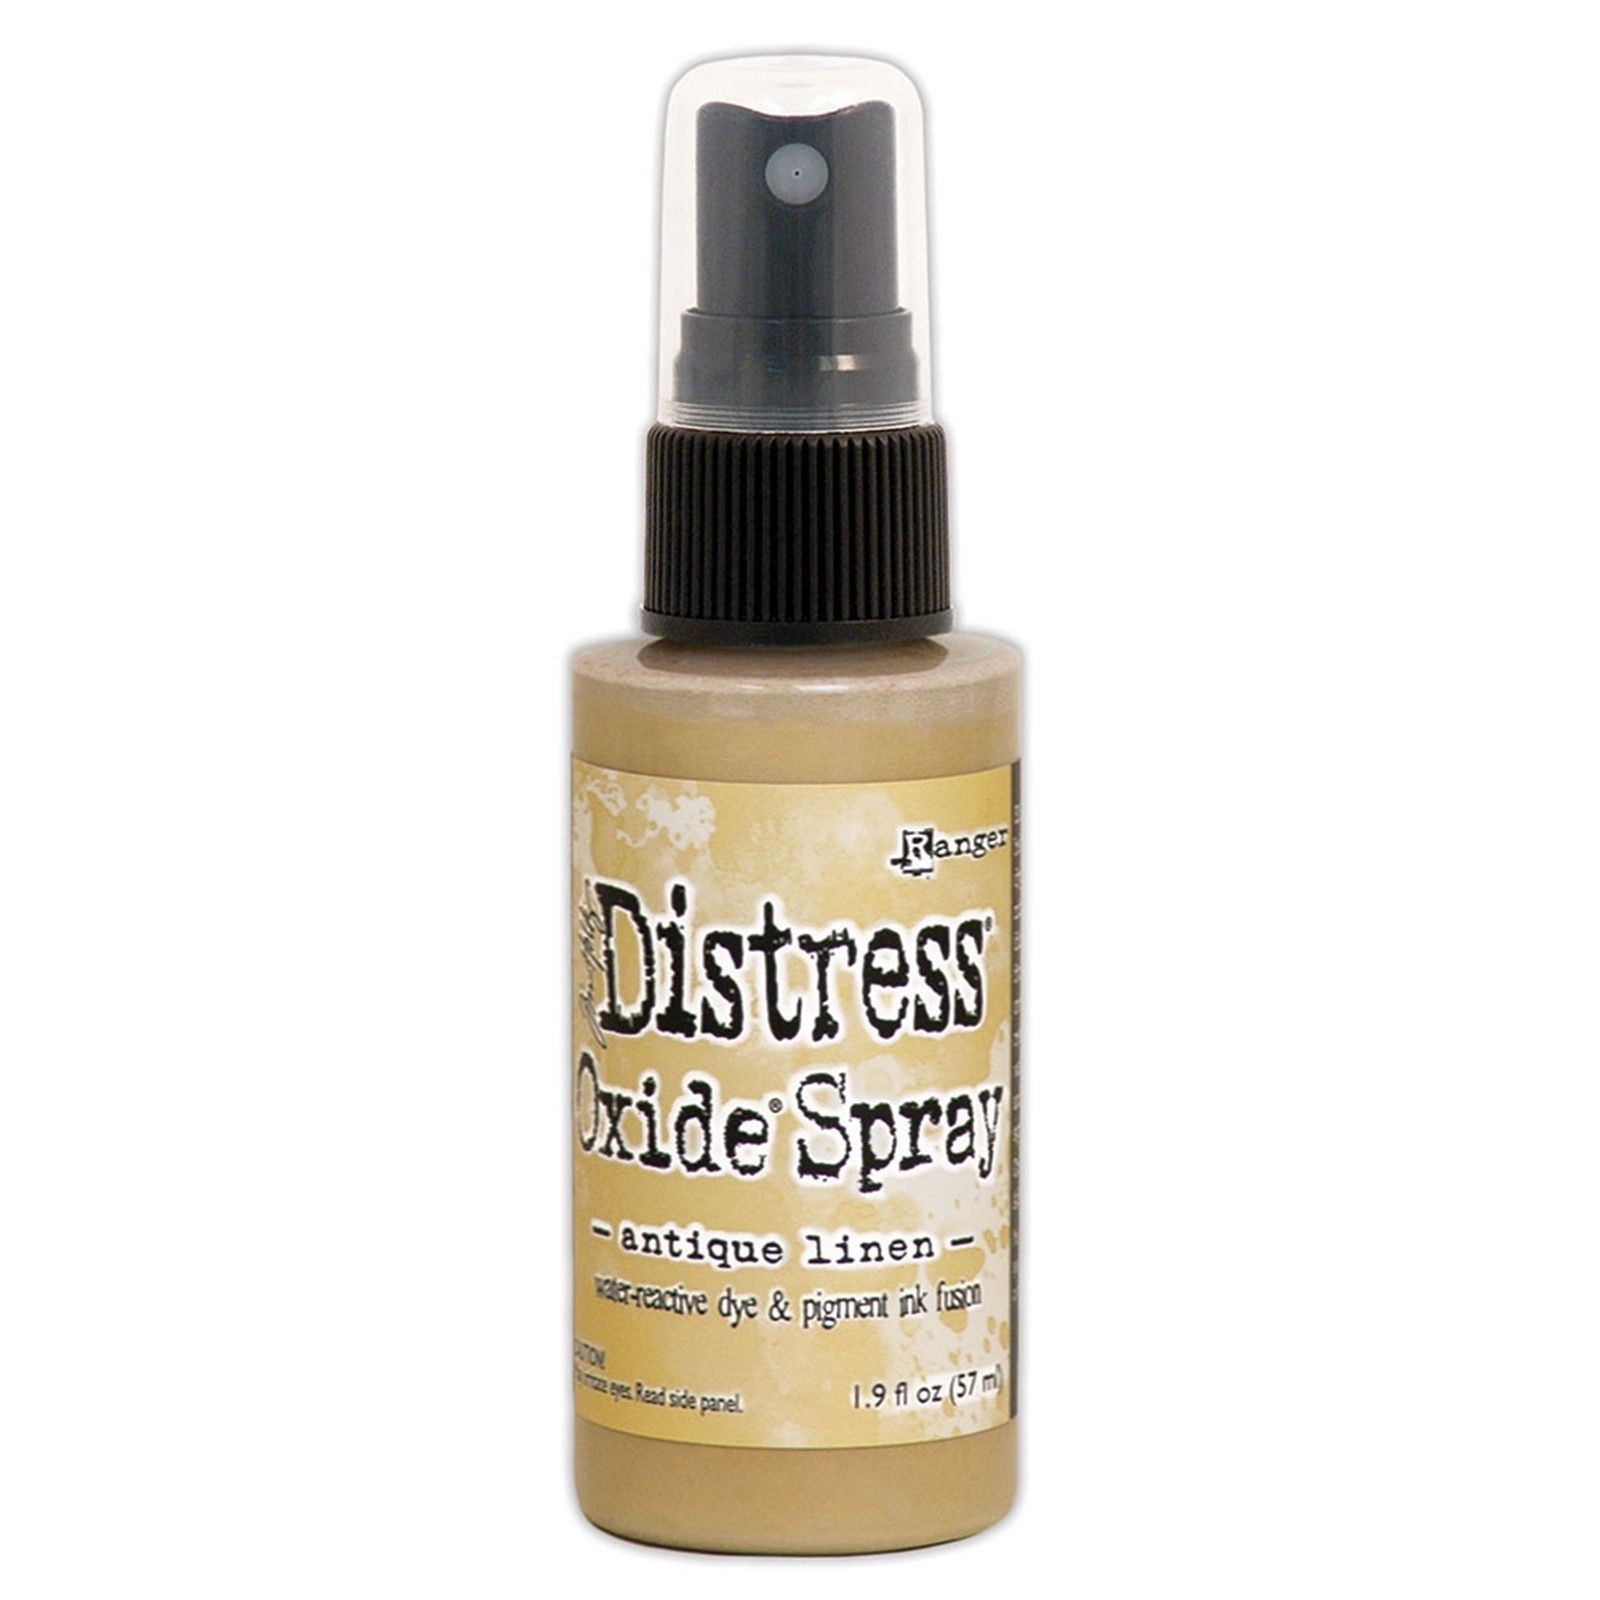 Tim Holtz Distress Oxide Spray 57ml - Antique Linen